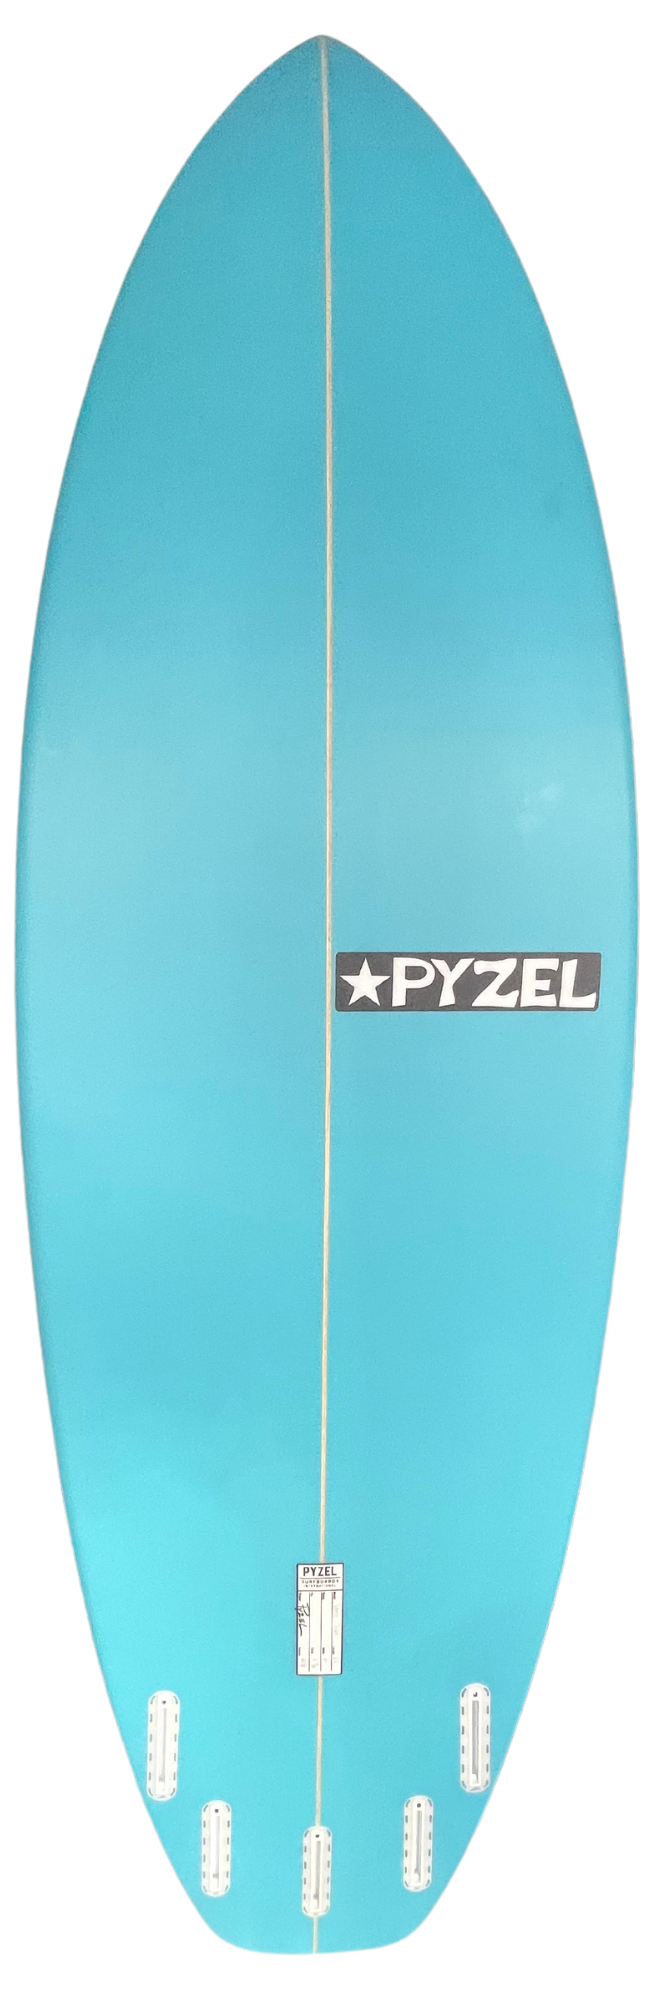 Planche de surf PYZEL White Tiger 6'2 - 40,9Lts FUTURES